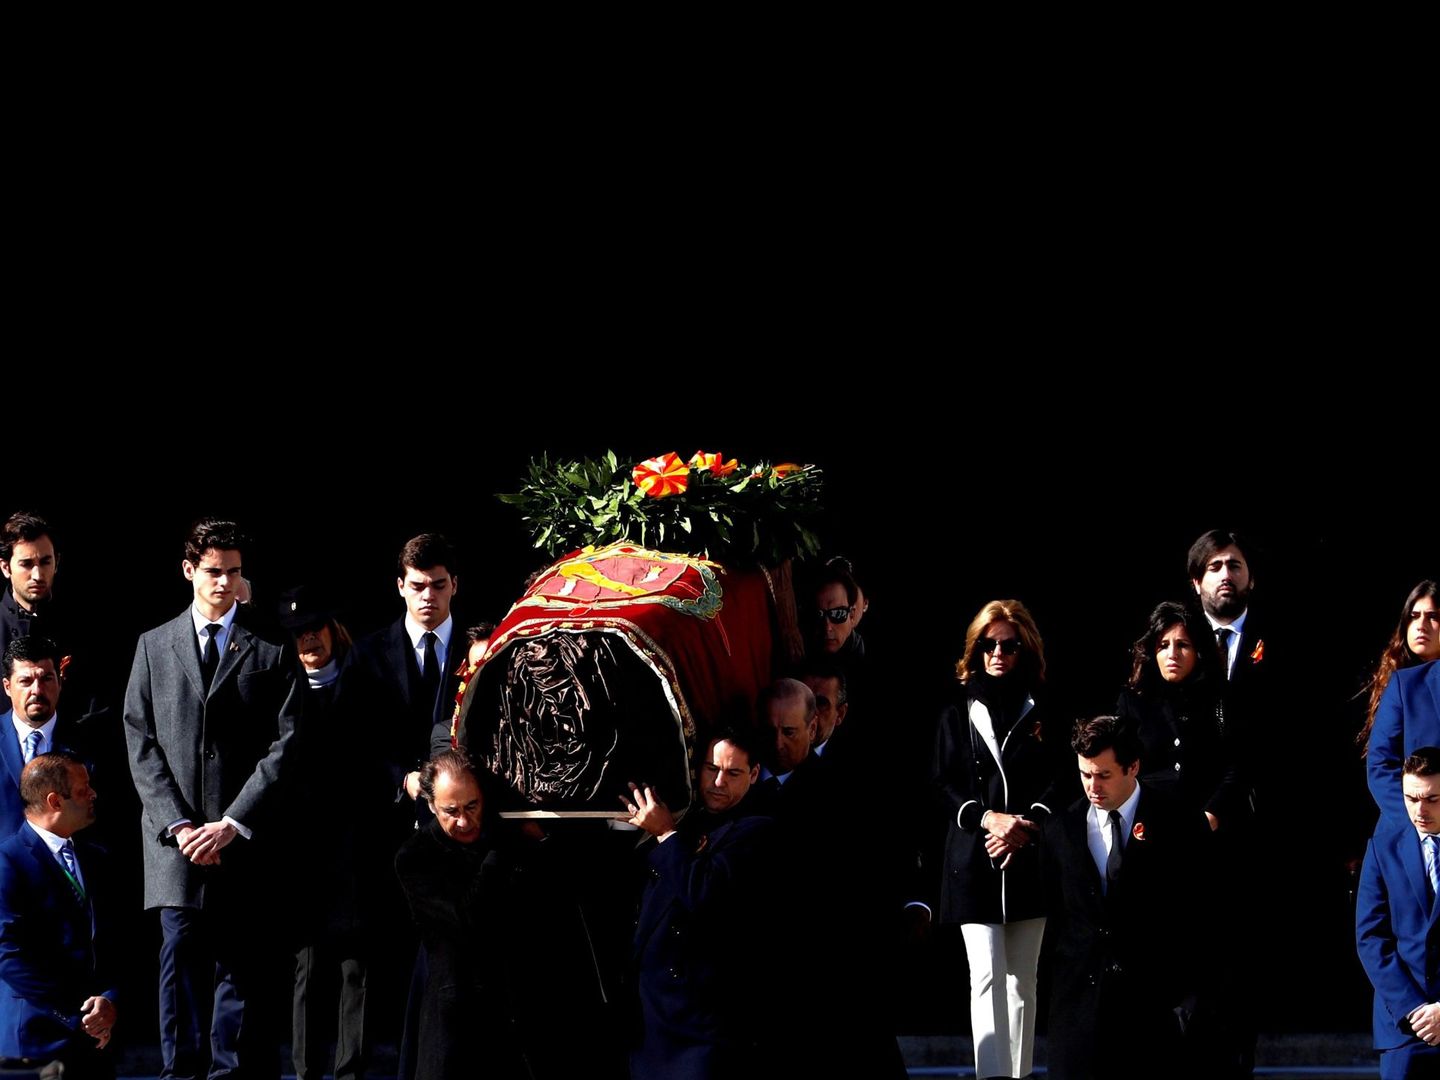 Familiares de Francisco Franco portan el féretro con los restos mortales del dictador tras su exhumación en la basílica del Valle de los Caídos, antes de su trasladado al cementerio de El Pardo-Mingorrubio para su reinhumación, el 24 de octubre, en San Lorenzo de El Escorial. EFE J.J. Guillén